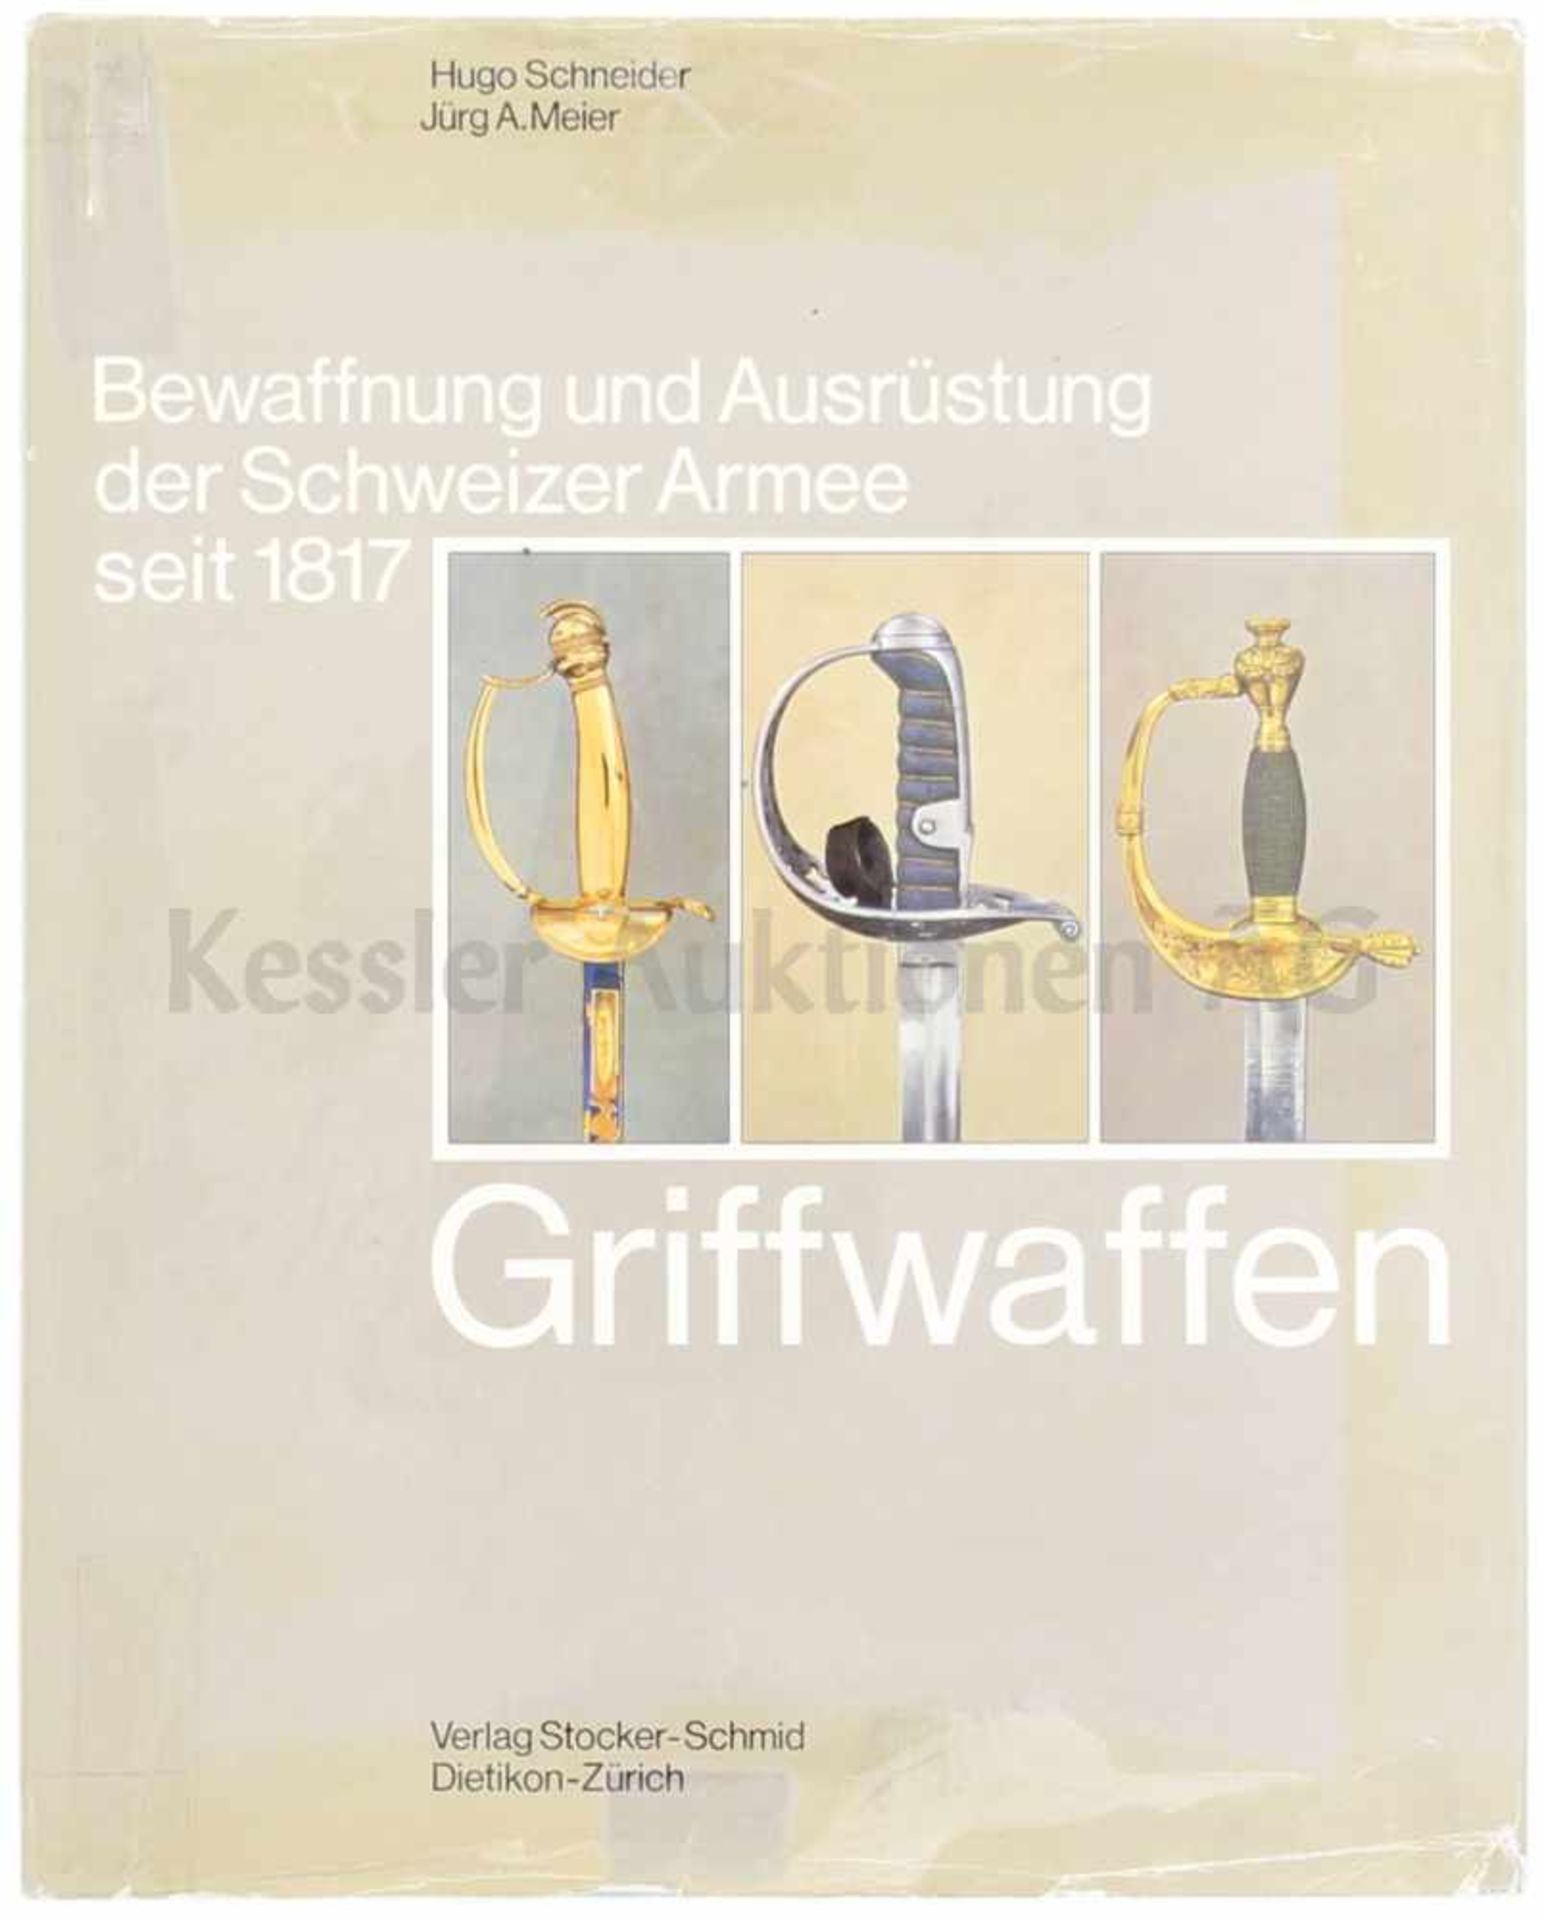 Bewaffnung und Ausrüstung der Schweizer Armee seit 1817 Band 7: Griffwaffen Zustand 1 HQS: 237836